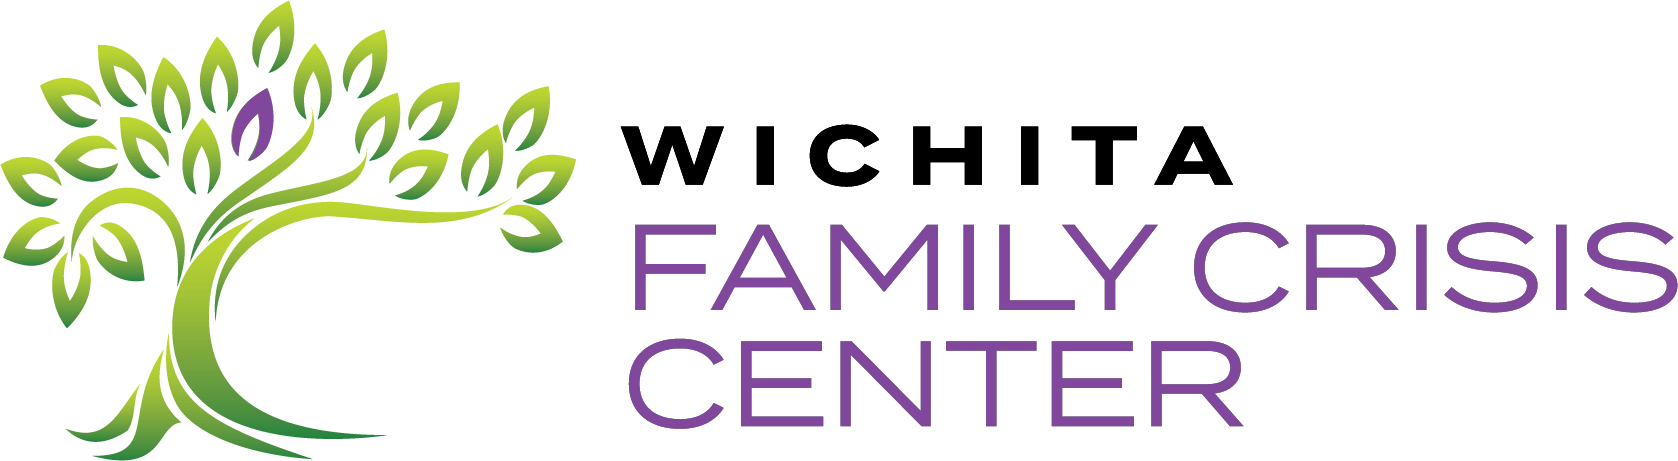 Wichita Family Crisis Center Logo